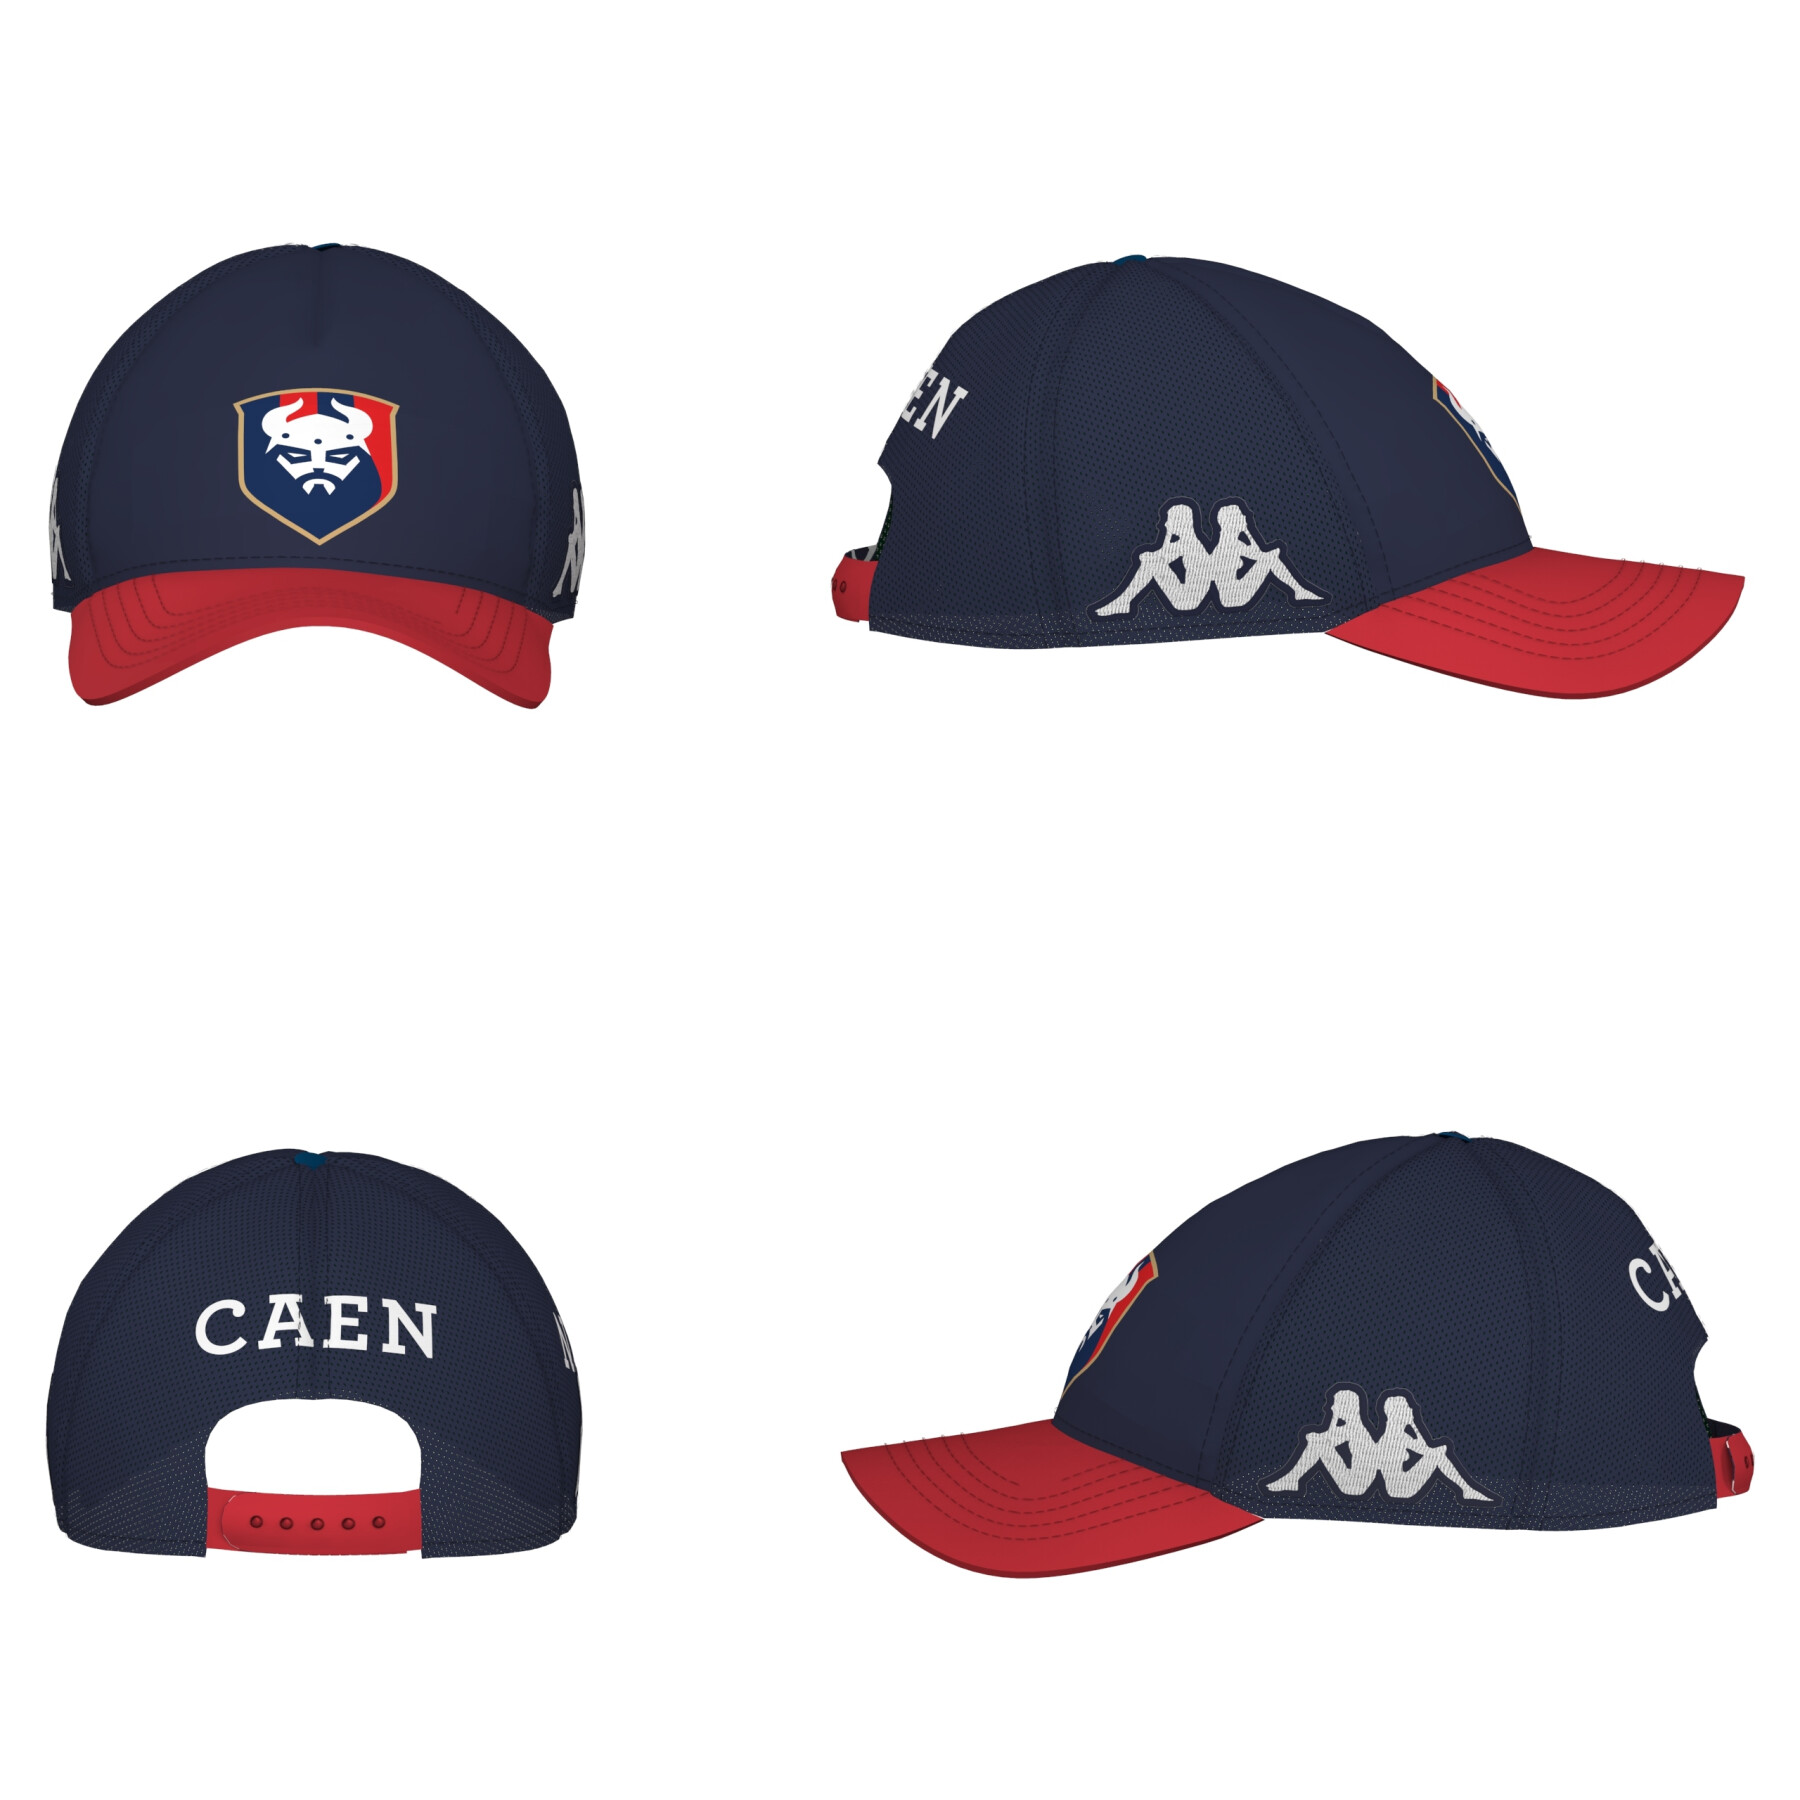 Baseball cap SM Caen Asety